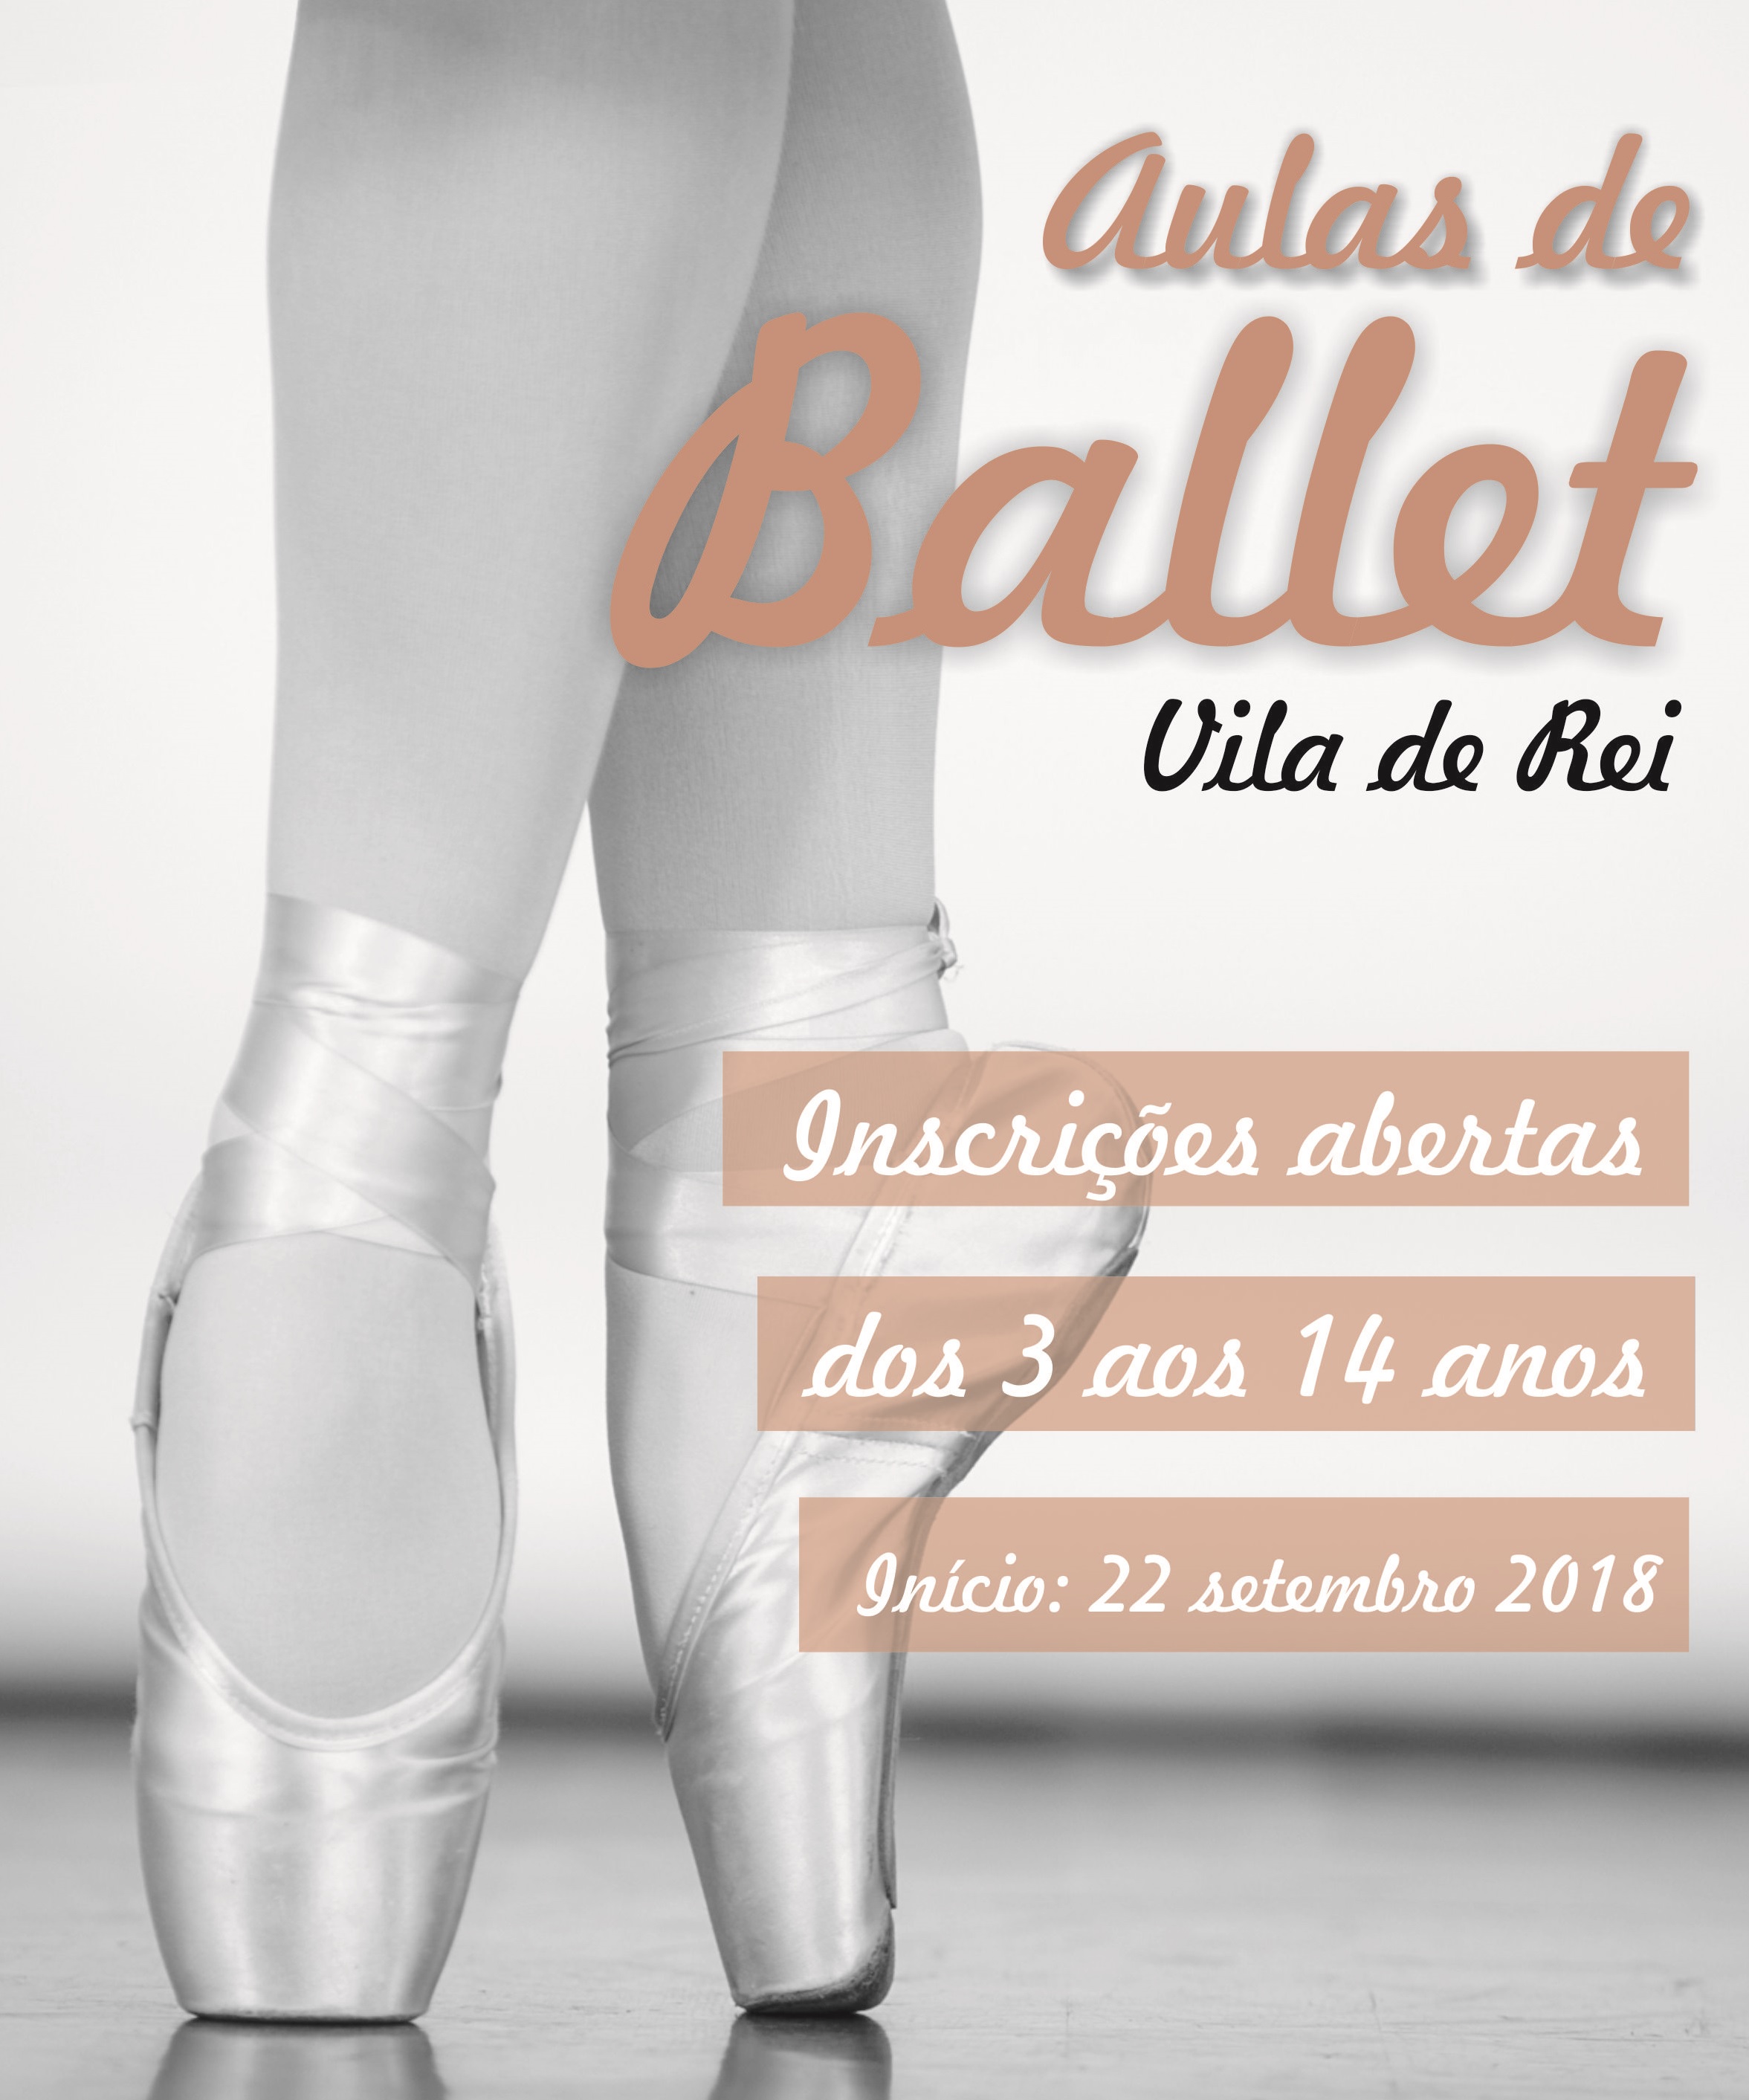 Vila de Rei: Vilarregense com aulas de Ballet no novo ano letivo